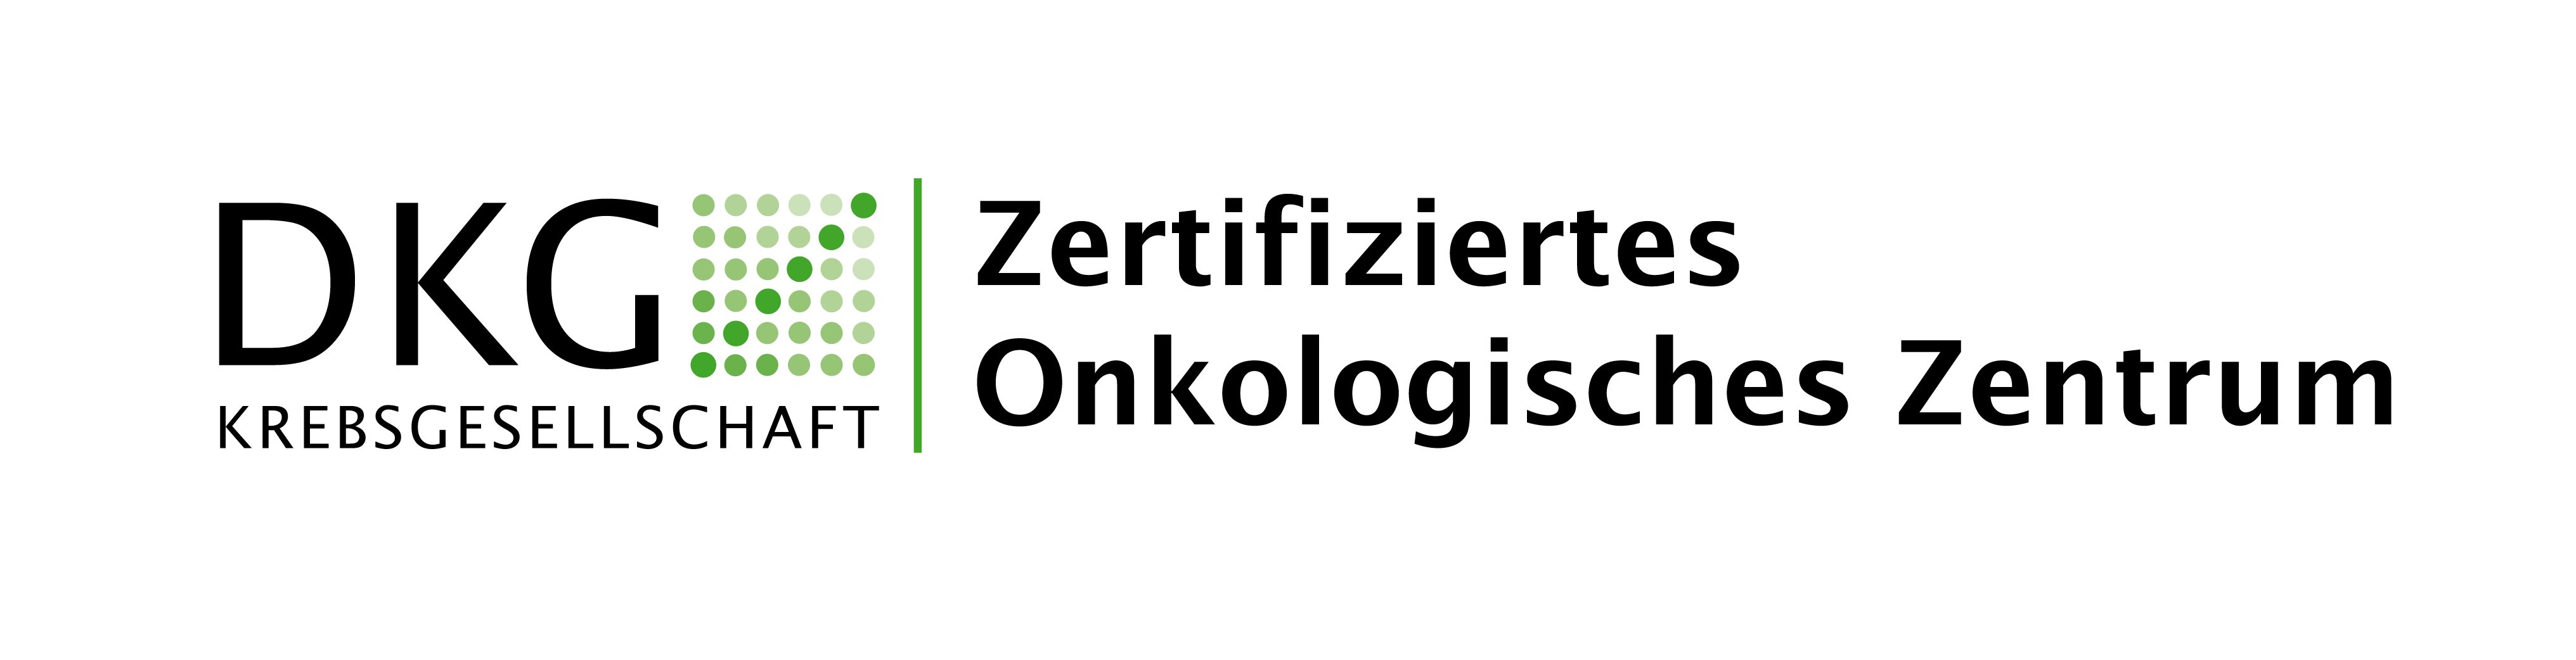 Logo: DKG Krebsgesellschaft Zertifiziertes Onkologisches Zentrum.